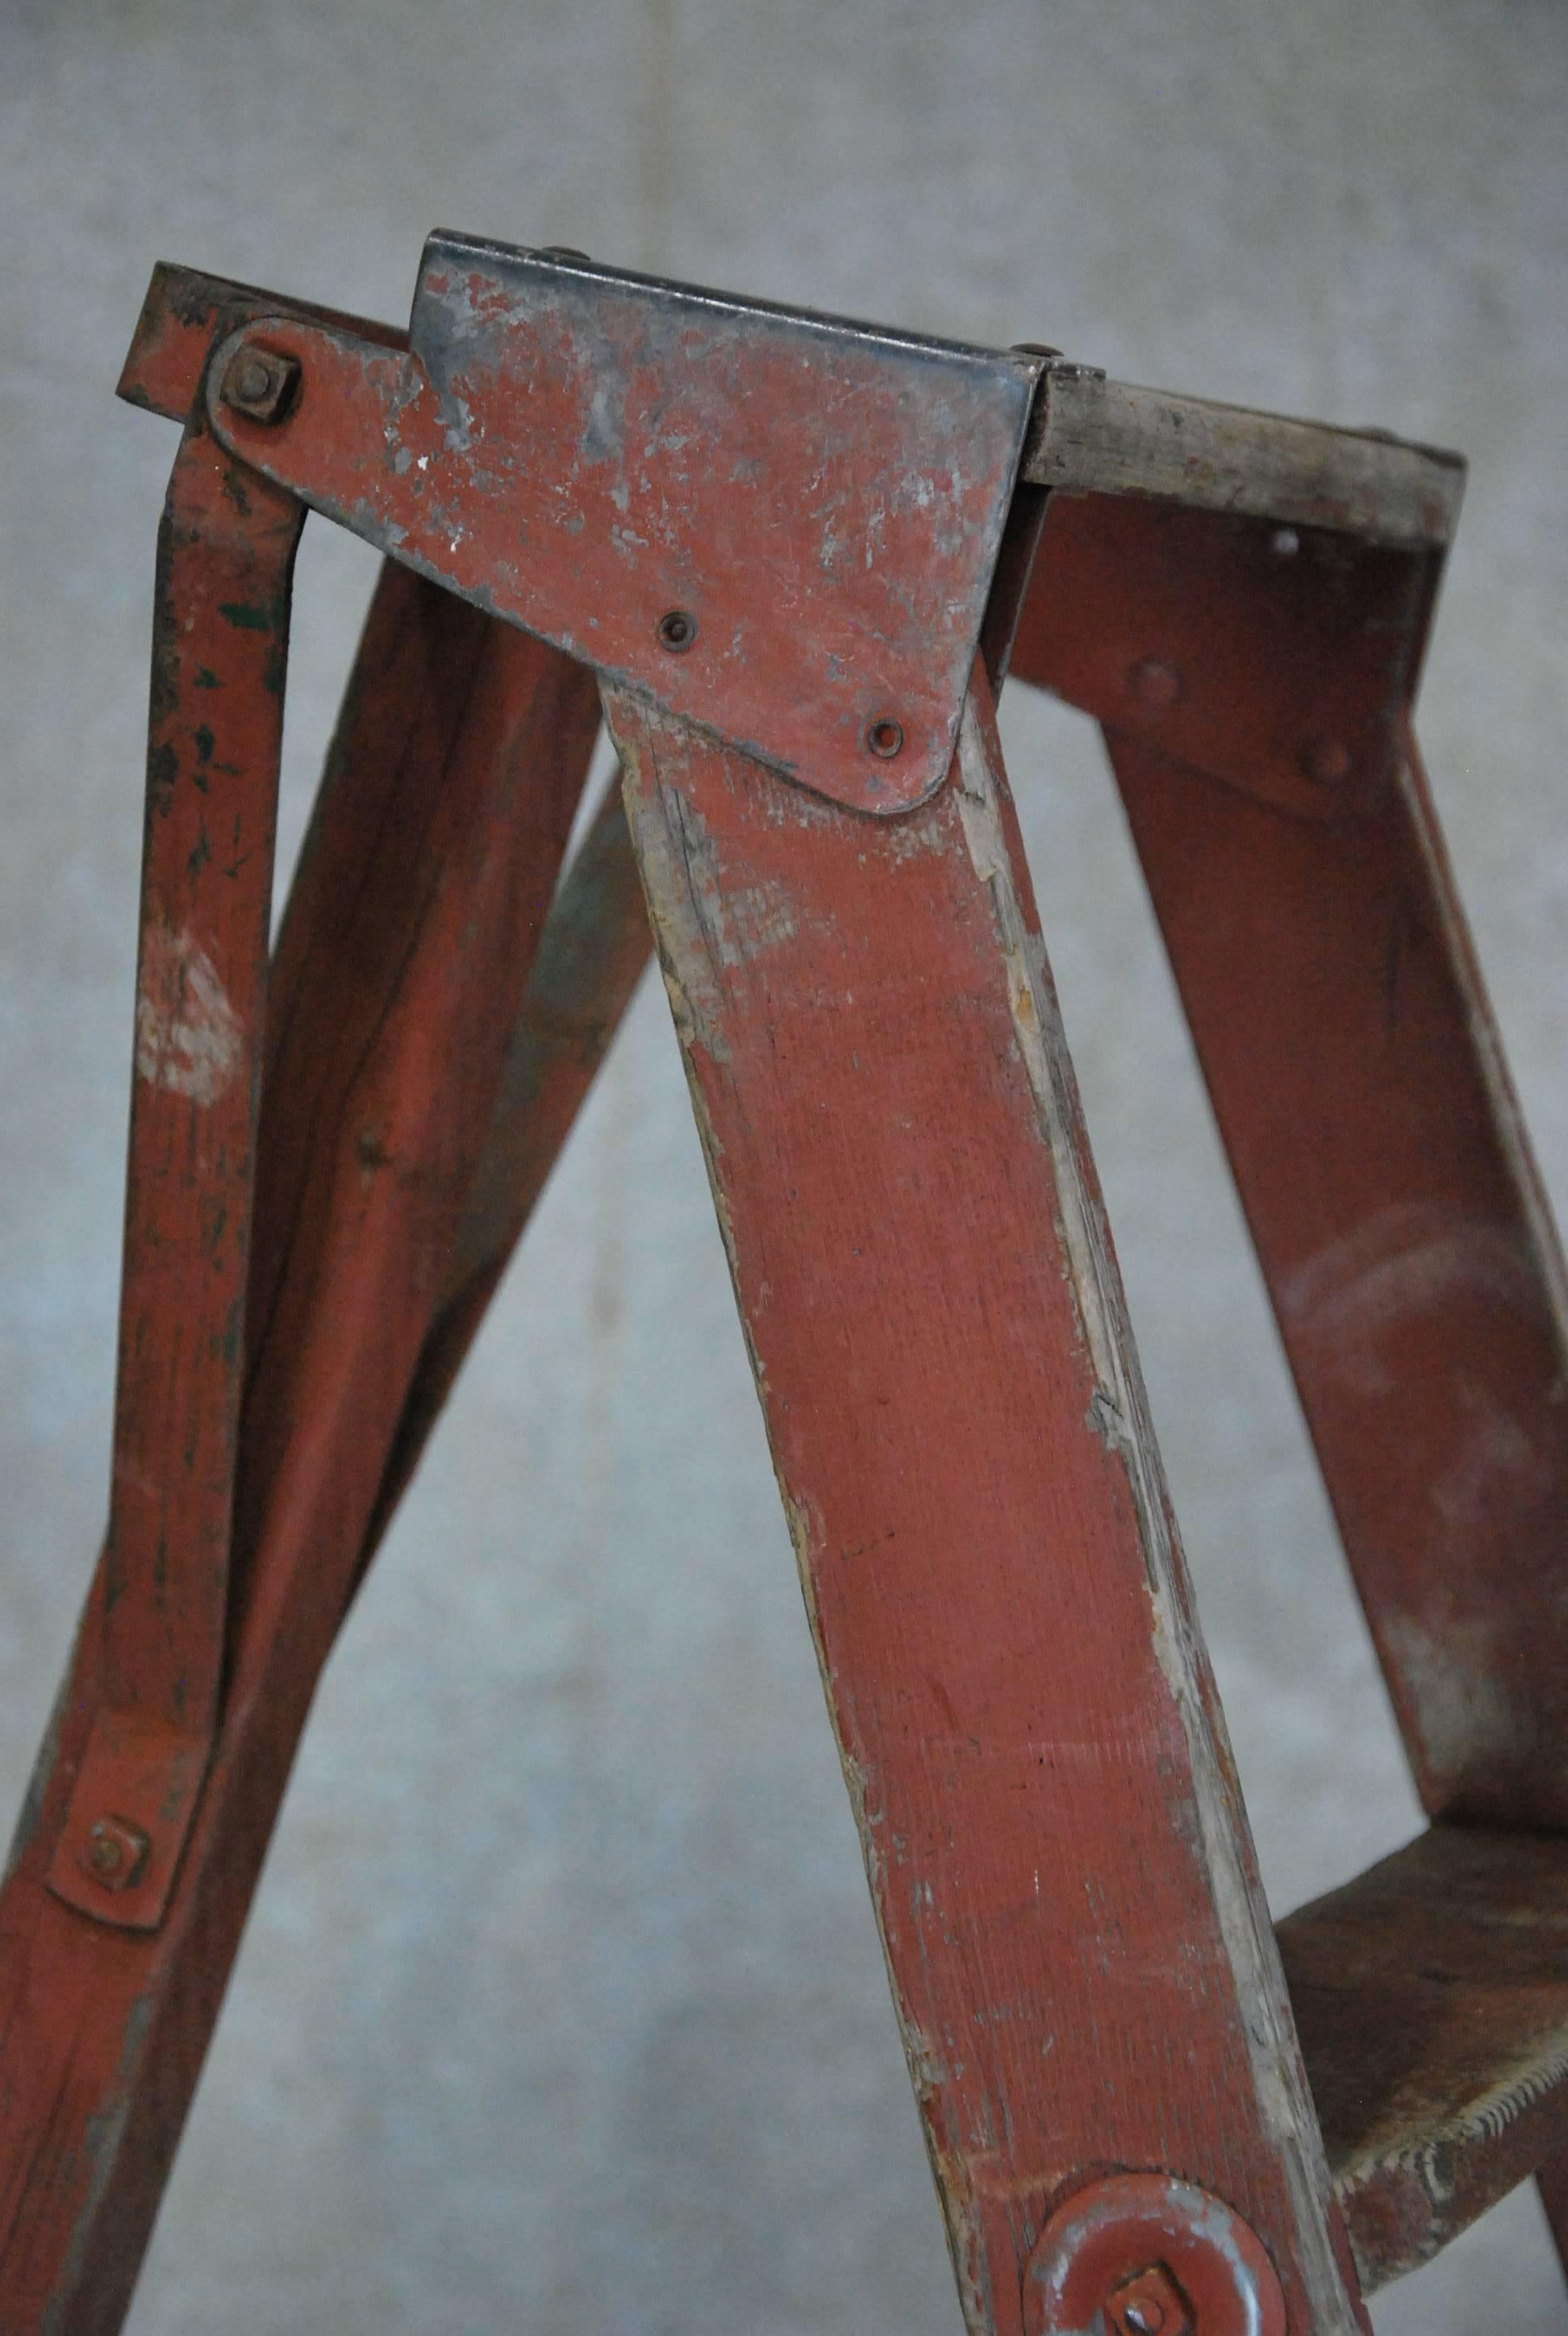 antique orchard ladder